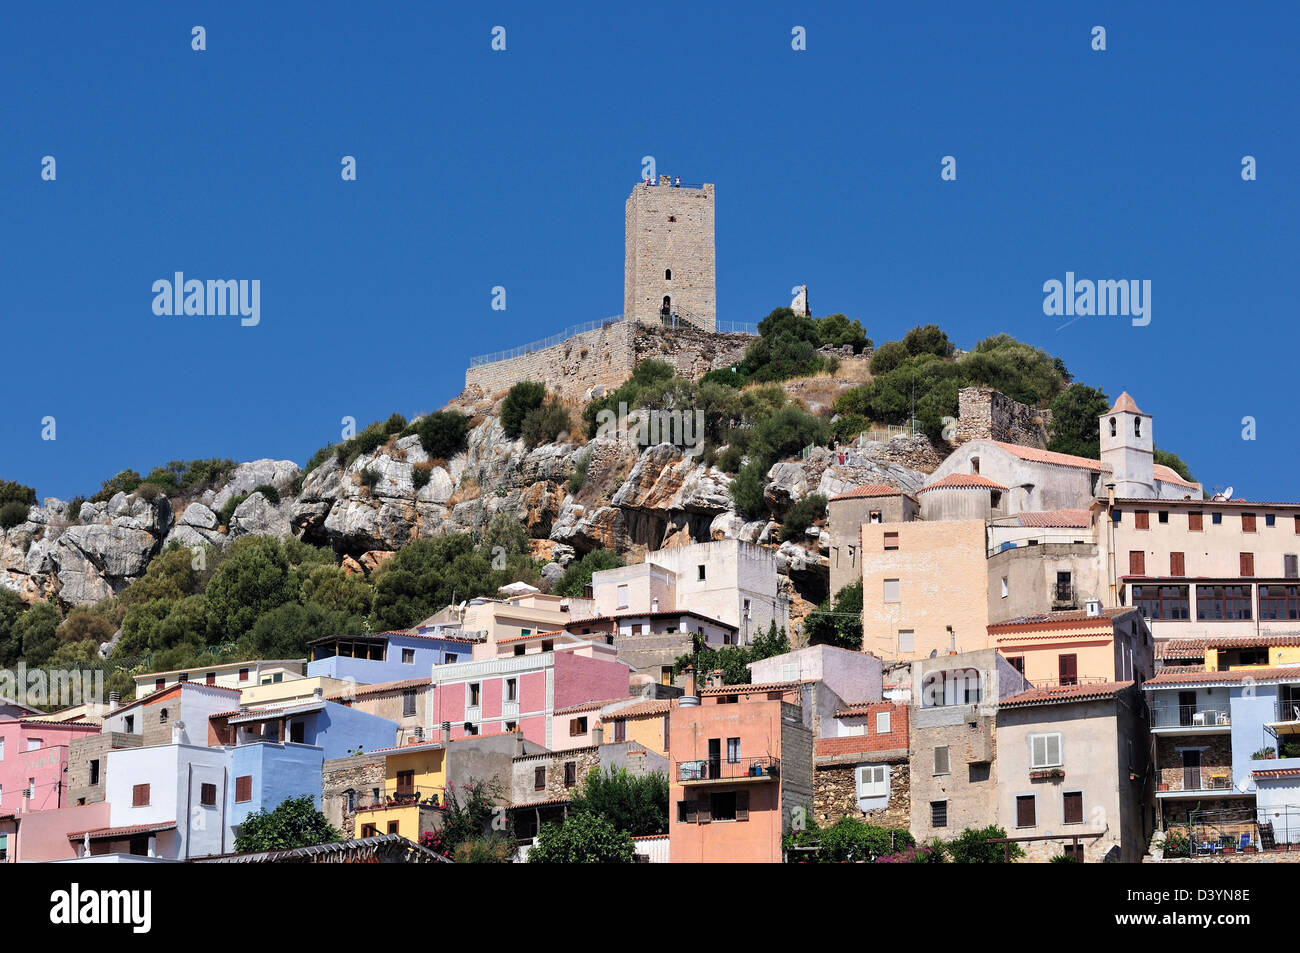 posada castello della fava sardegna italy by andrea quercioli Stock Photo